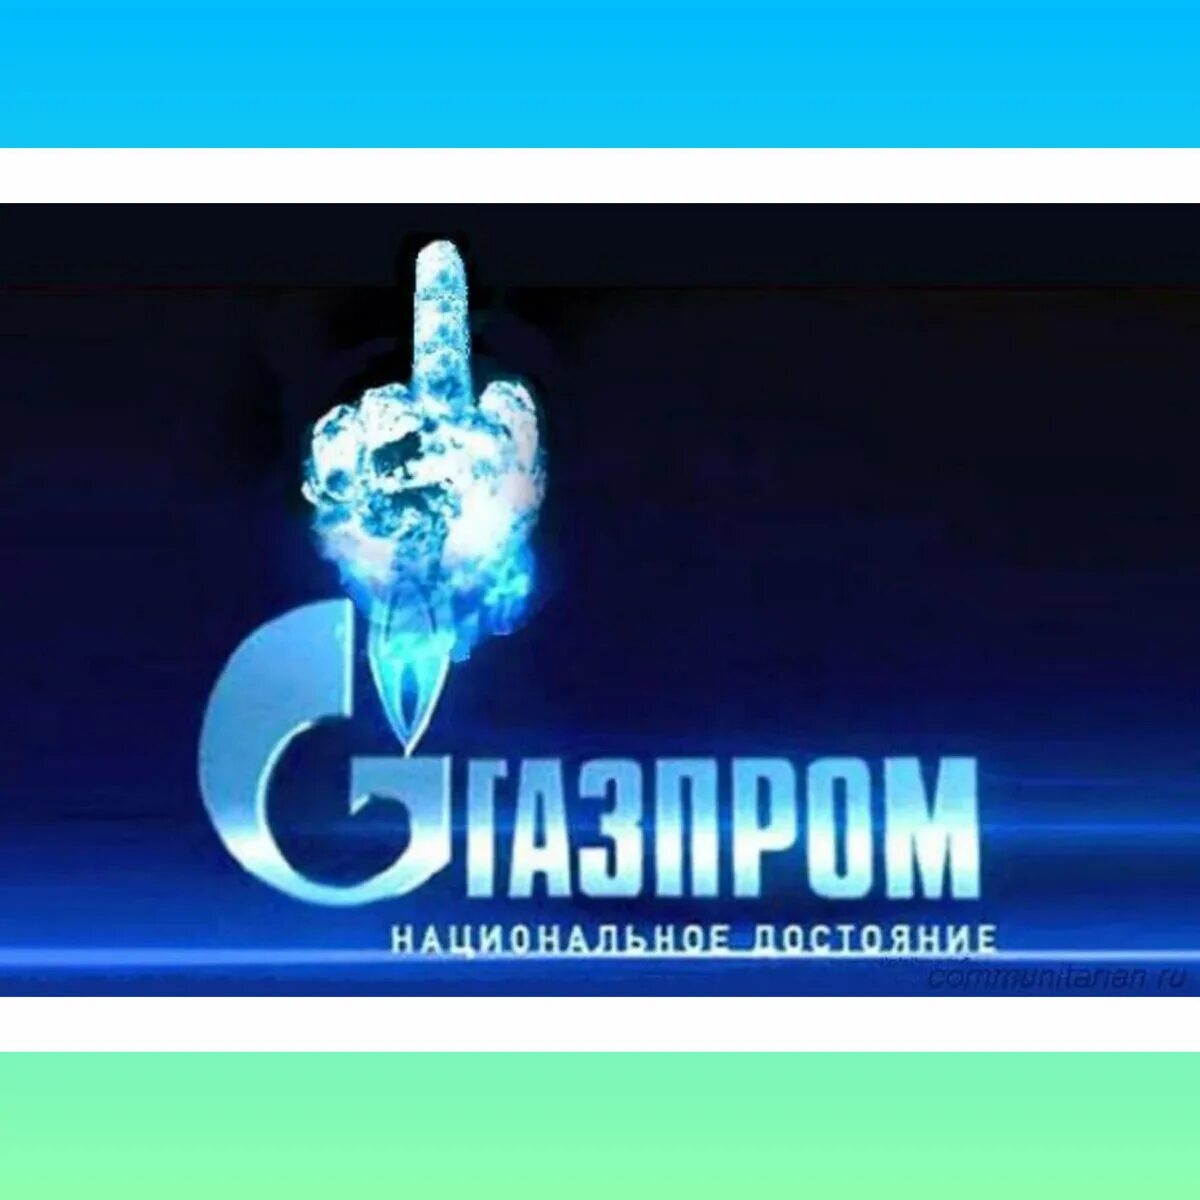 Национальное достояние народа. Рекламные слоганы Газпрома.